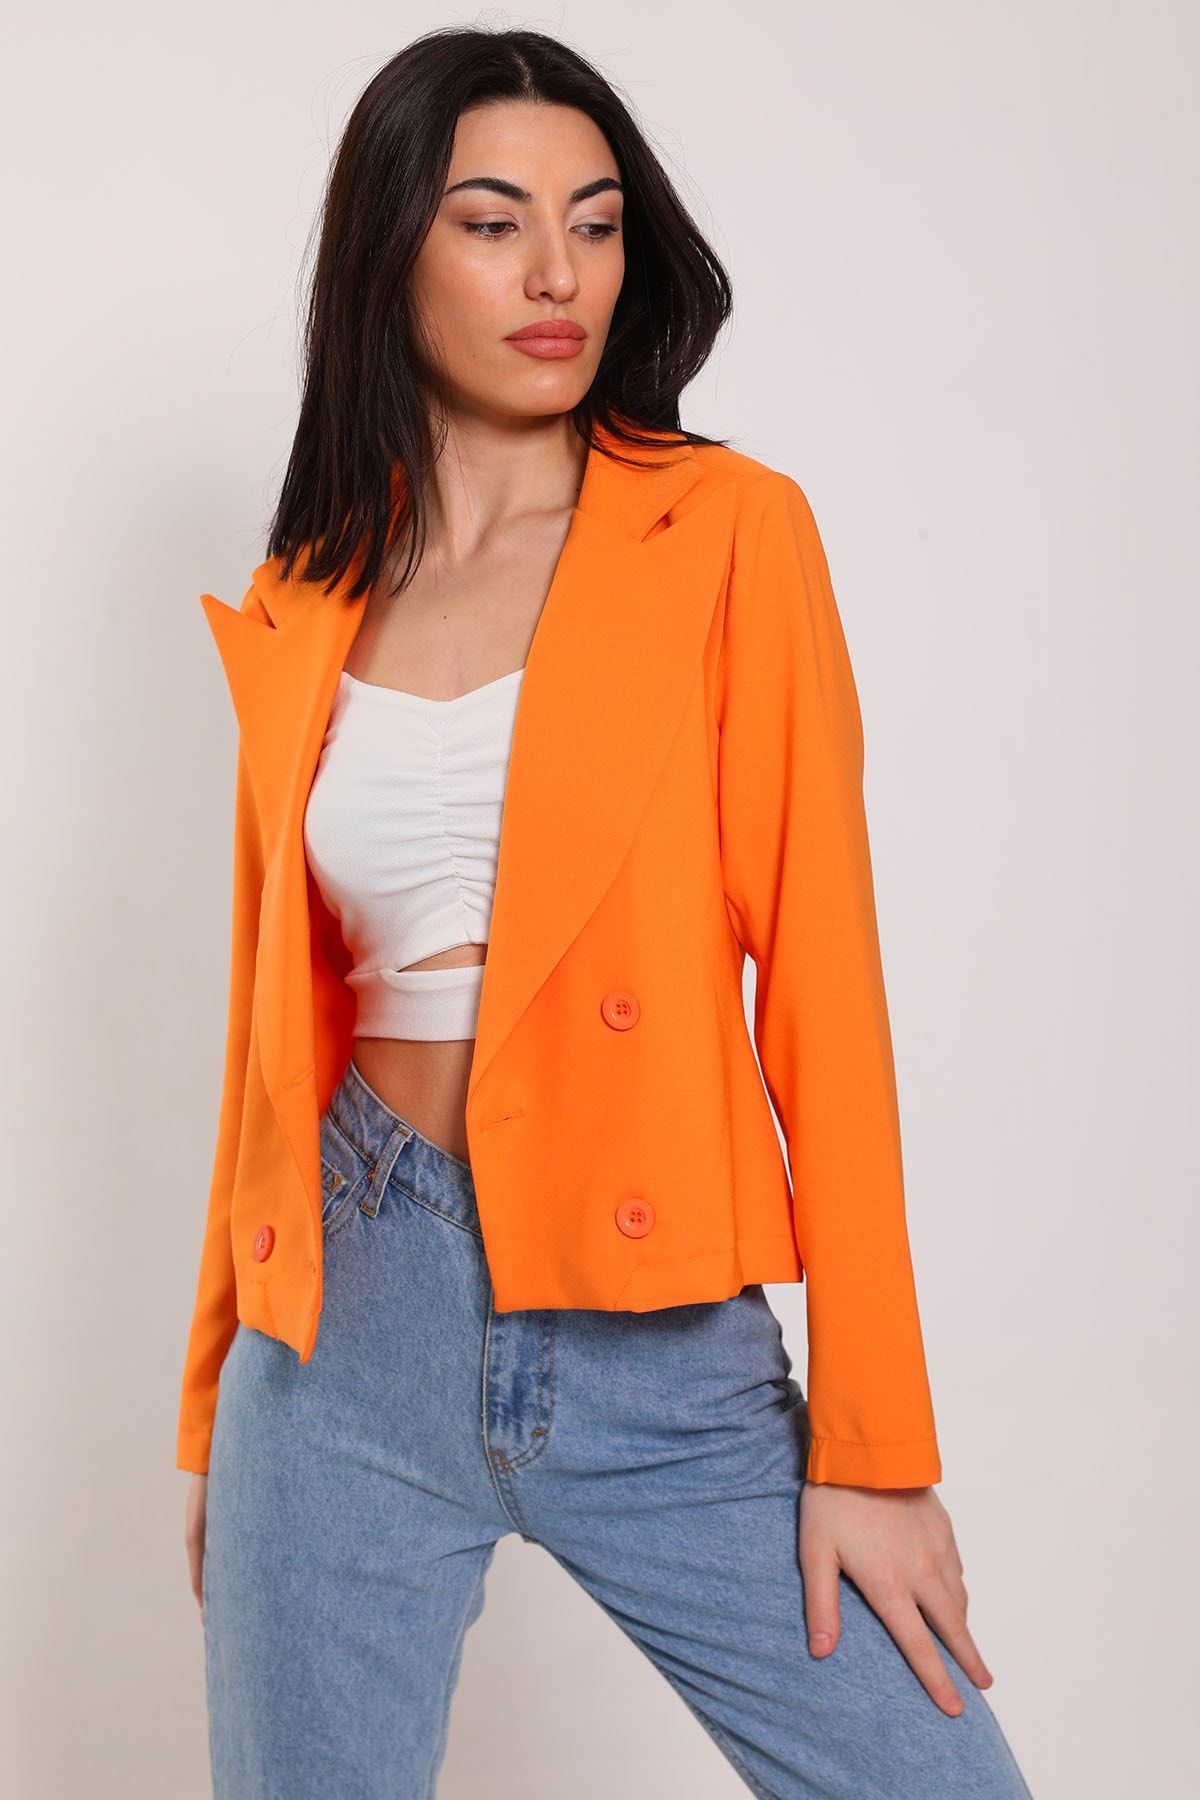 Julude Orange Kadın Ön Düğmeli Kısa Blazer Ceket